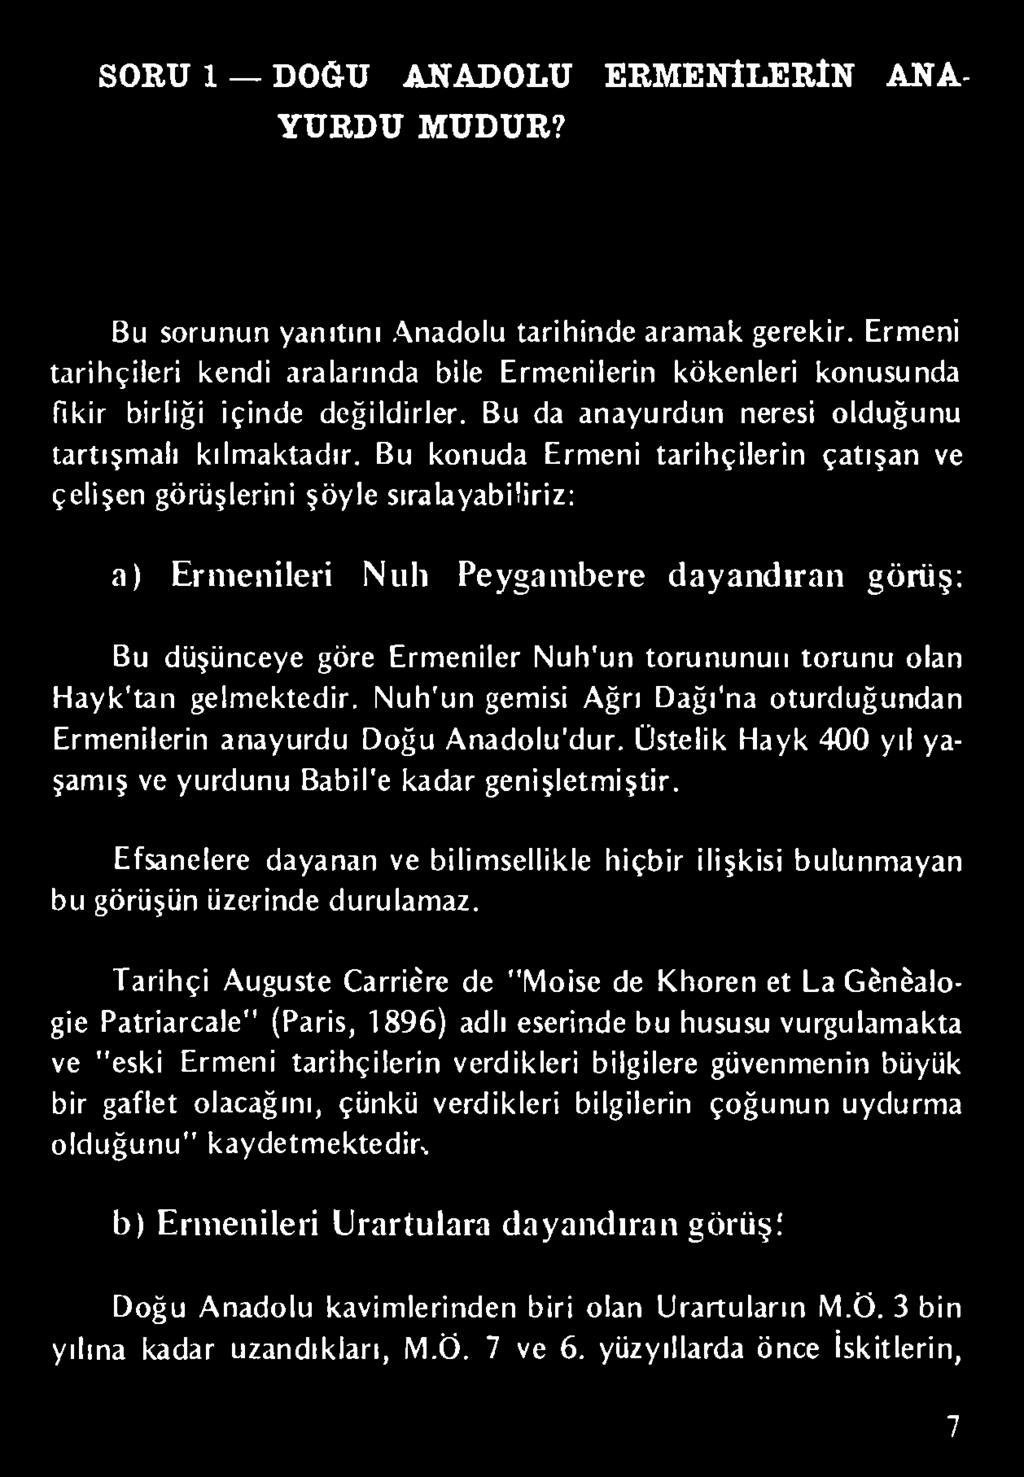 Bu konuda Ermeni tarihçilerin çatışan ve çelişen görüşlerini şöyle sıralayabiliriz: a) Ermenileri Nıılı Peygambere dayandıran görüş: Bu düşünceye göre Ermeniler Nuh'un torununun torunu olan Hayk'tan